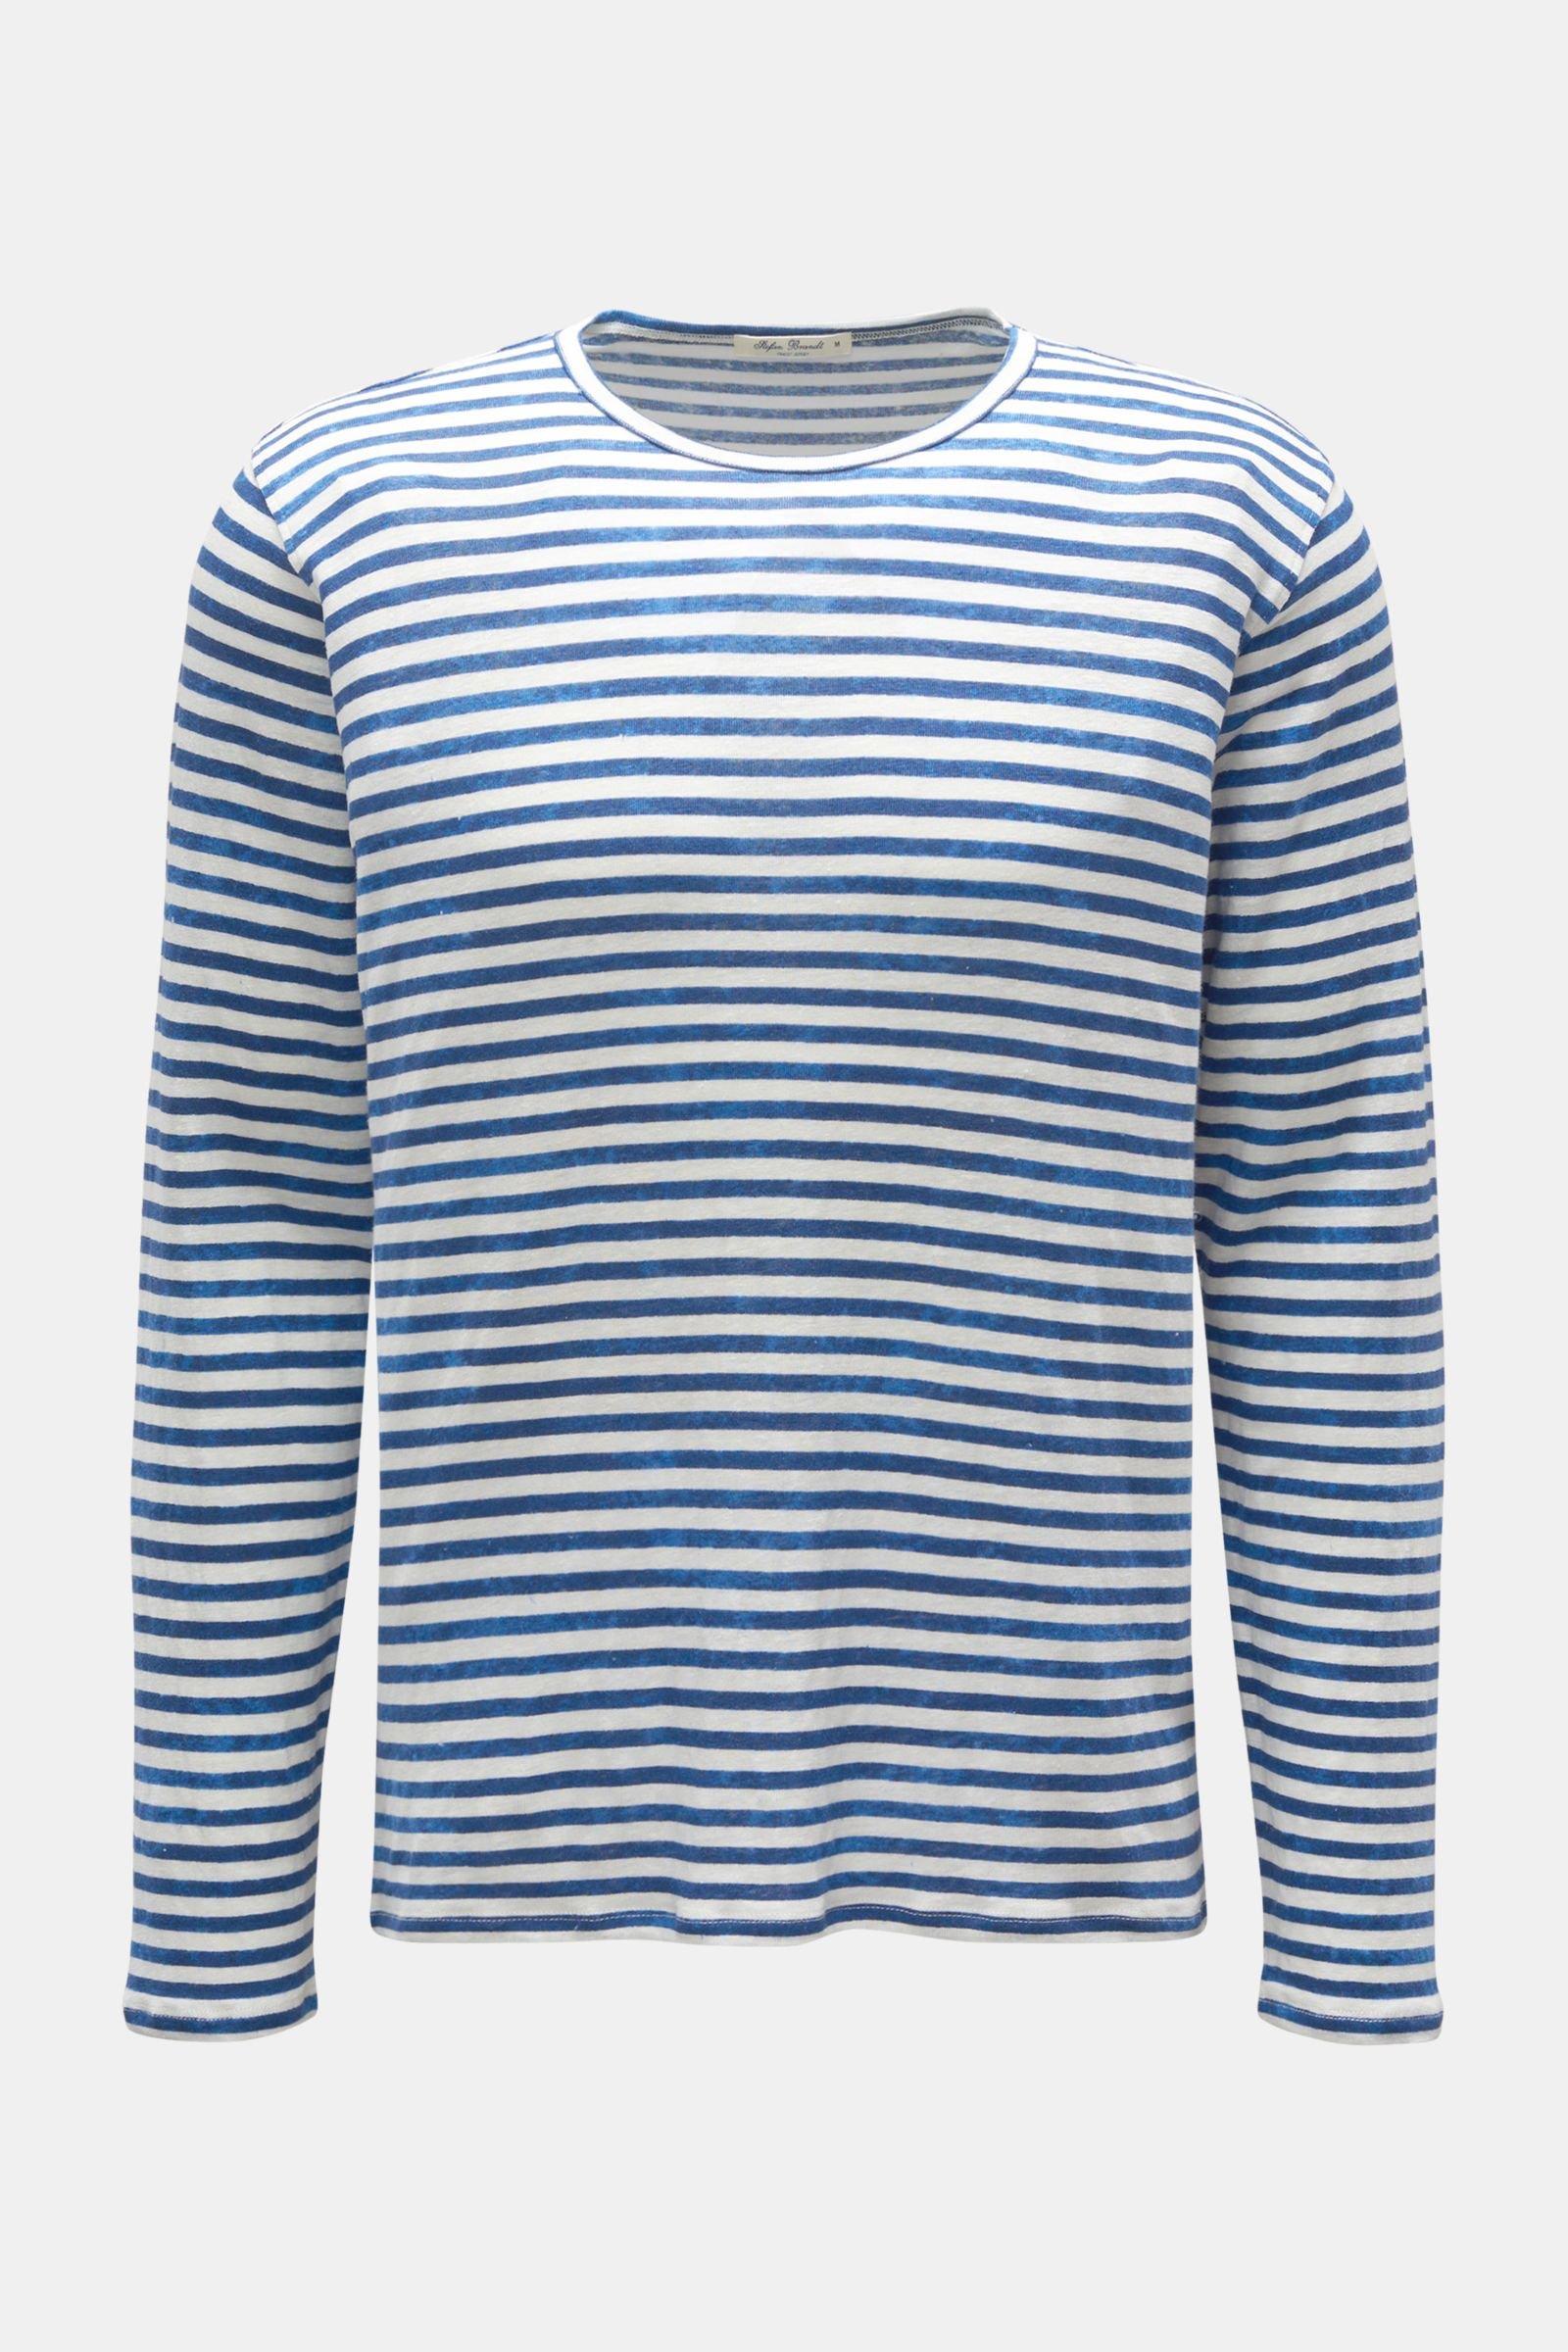 Linen long sleeve blue/white striped